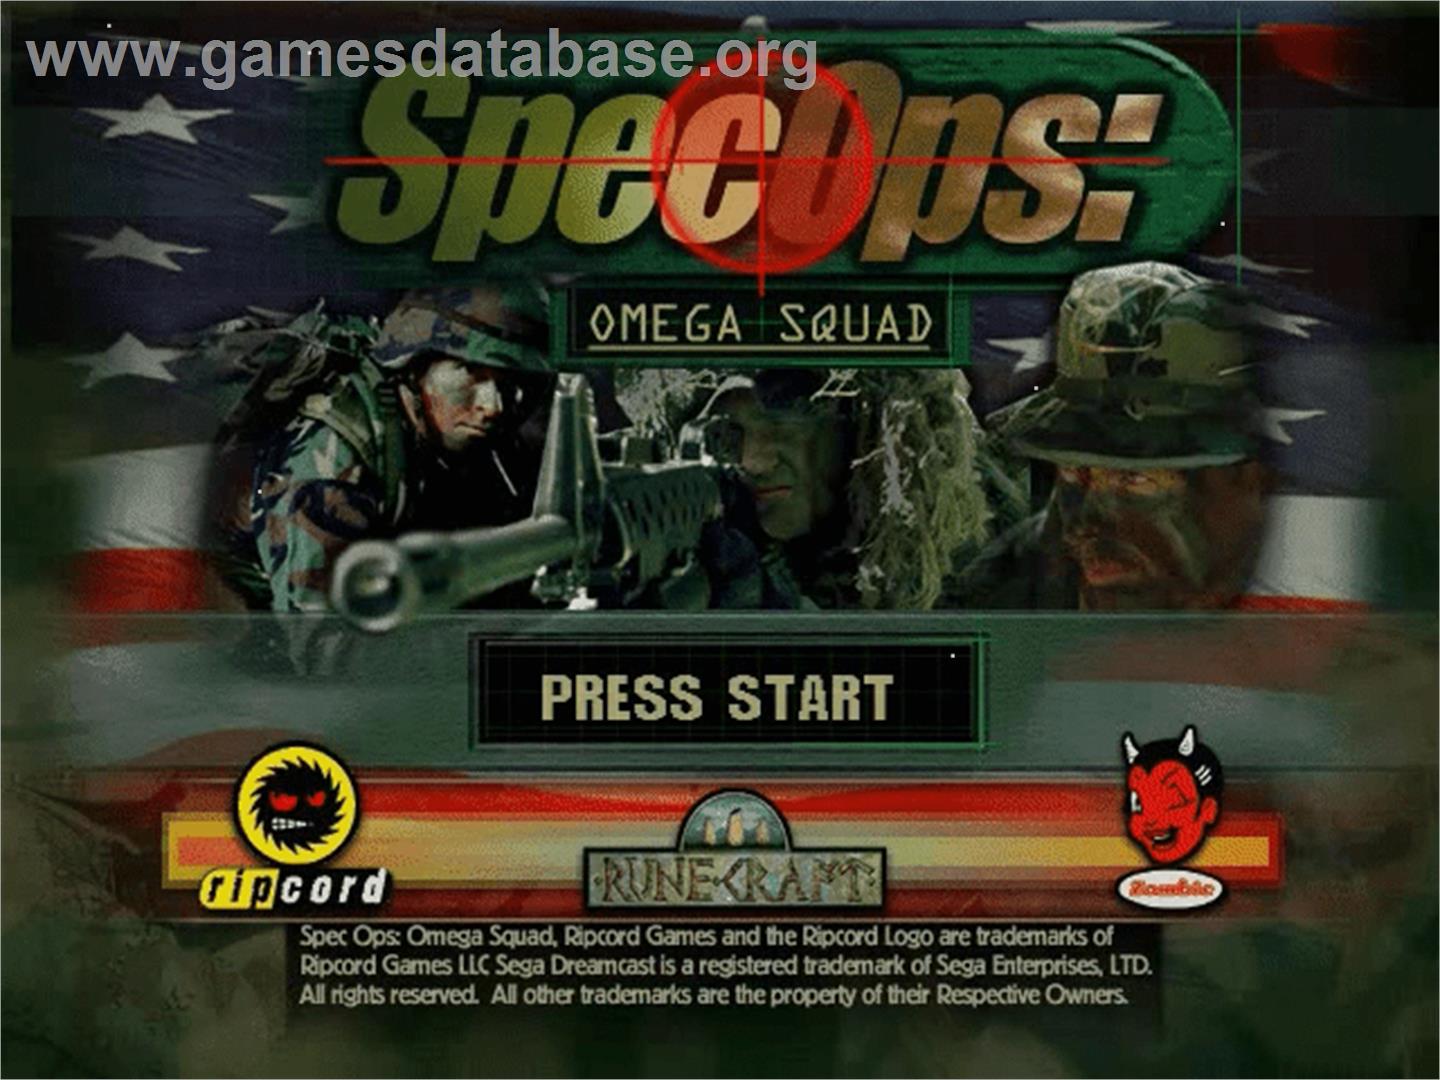 Spec Ops II: Omega Squad - Sega Dreamcast - Artwork - Title Screen